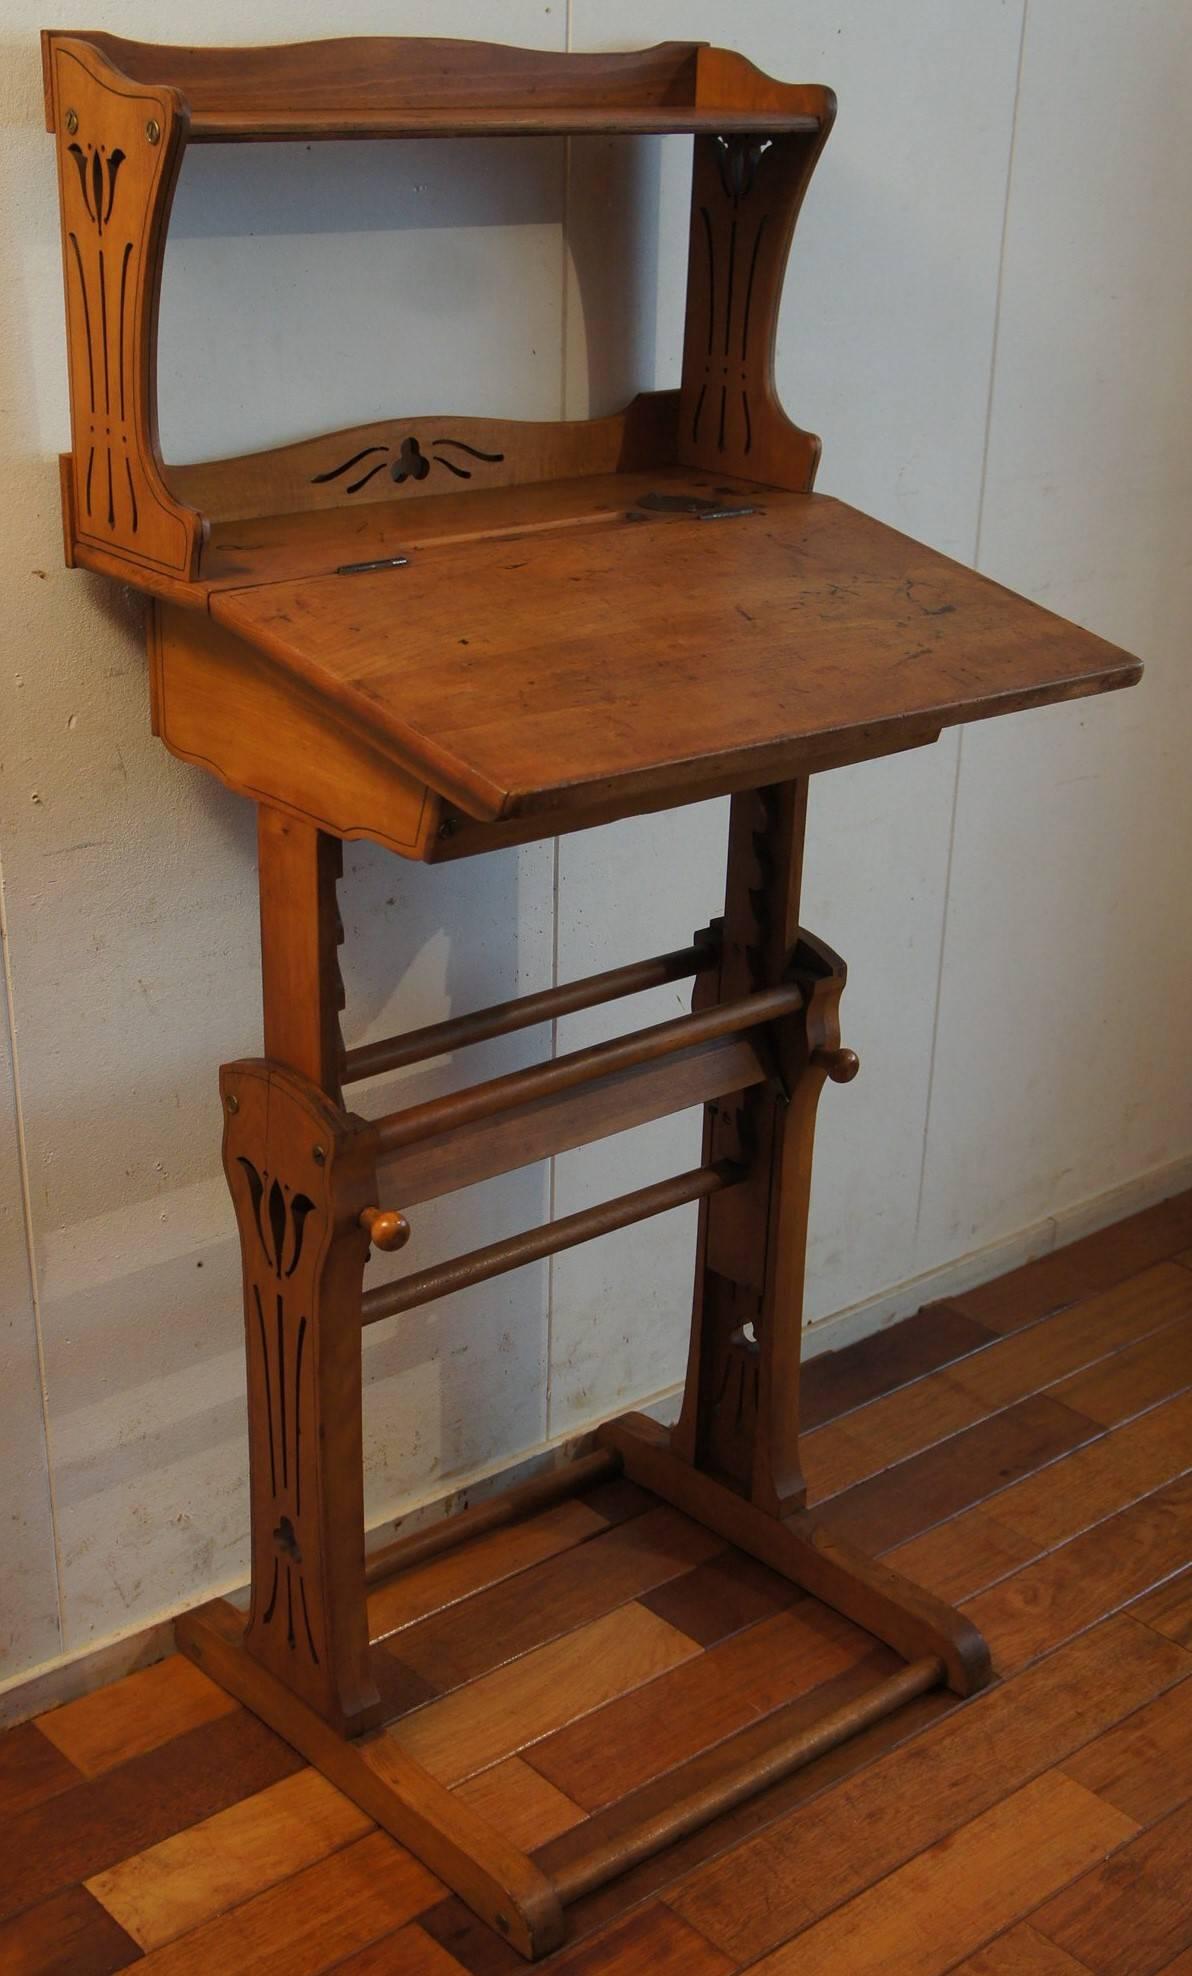 European Antique Adjustable Jugendstil Working Table with Inkwell for Craftsman & Artists